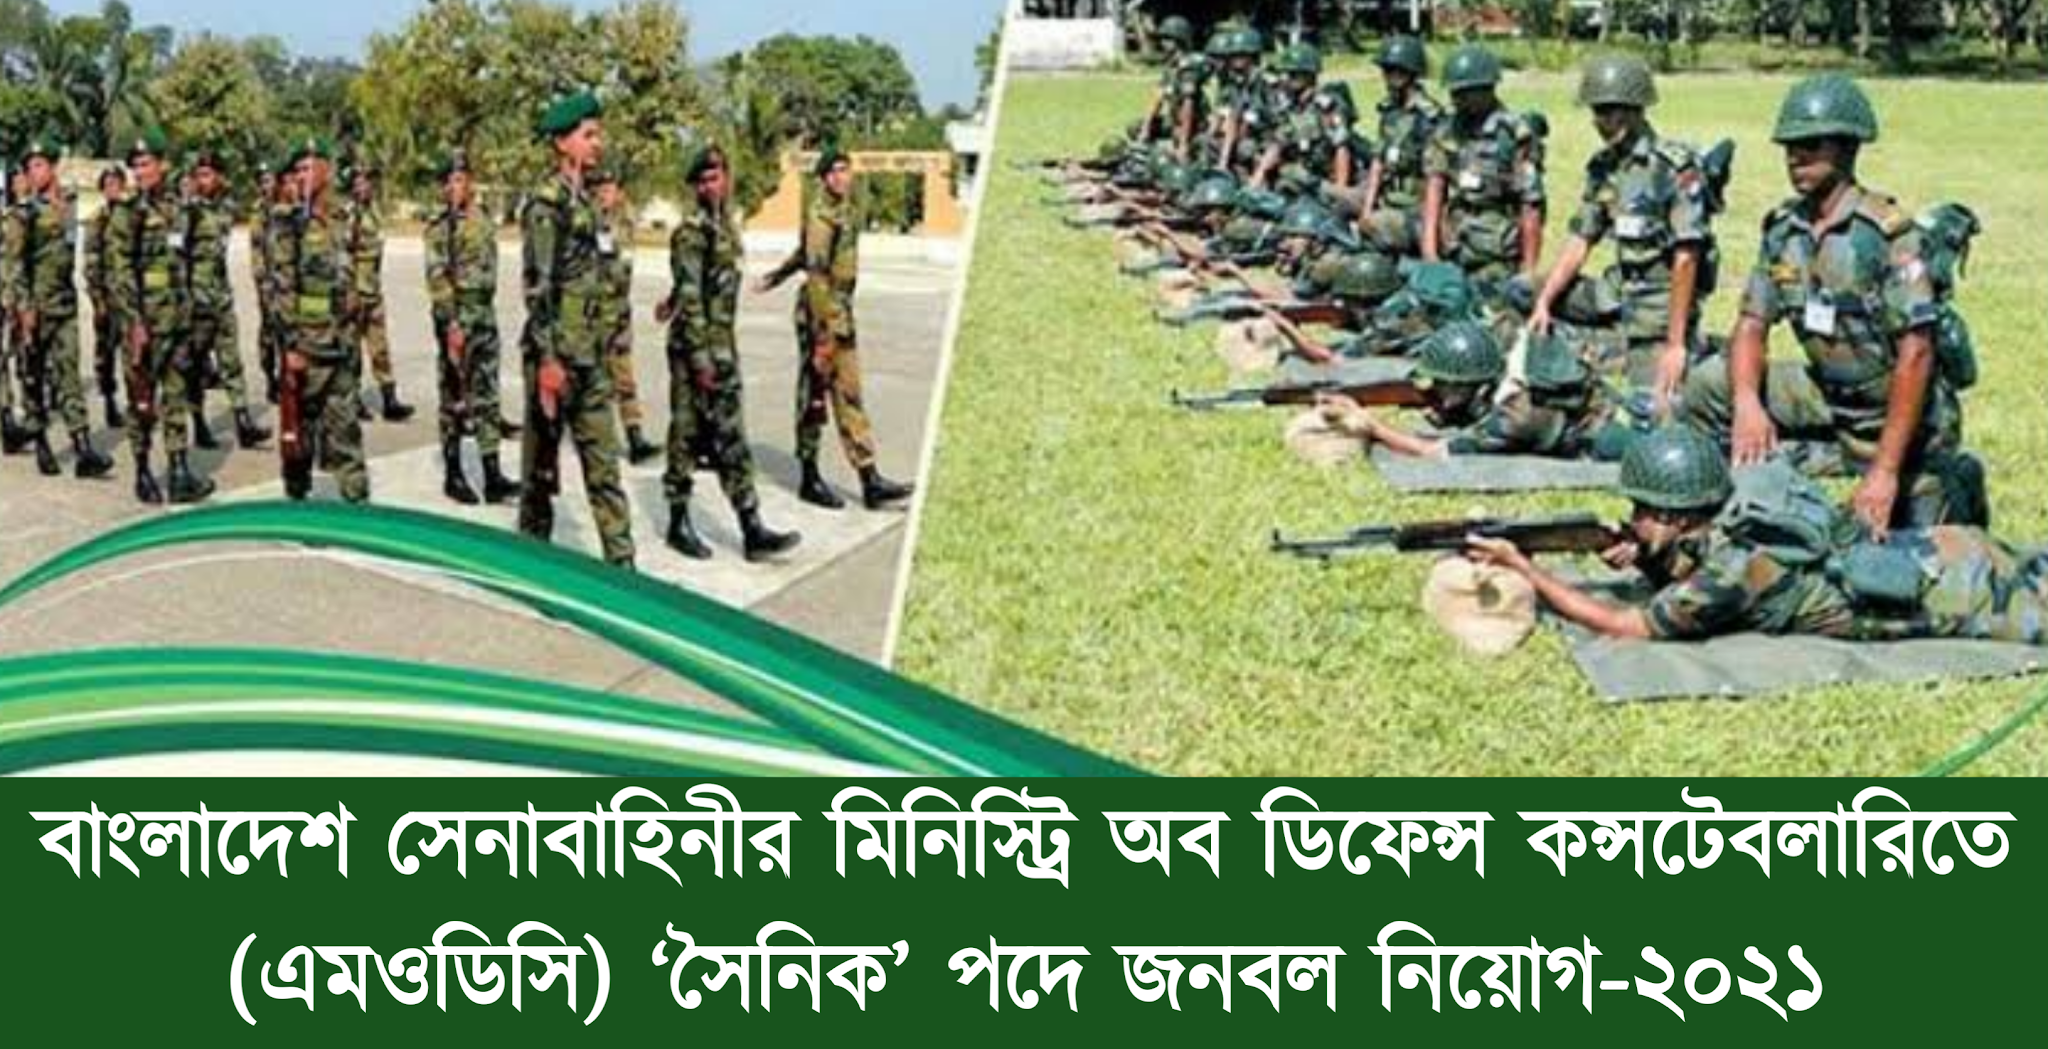 সেনাবাহিনীতে এমওডিসিতে সৈনিক পদে নিয়োগ বিজ্ঞপ্তি-২০২১ | Bangladesh Army MODC soldier job circular-2021